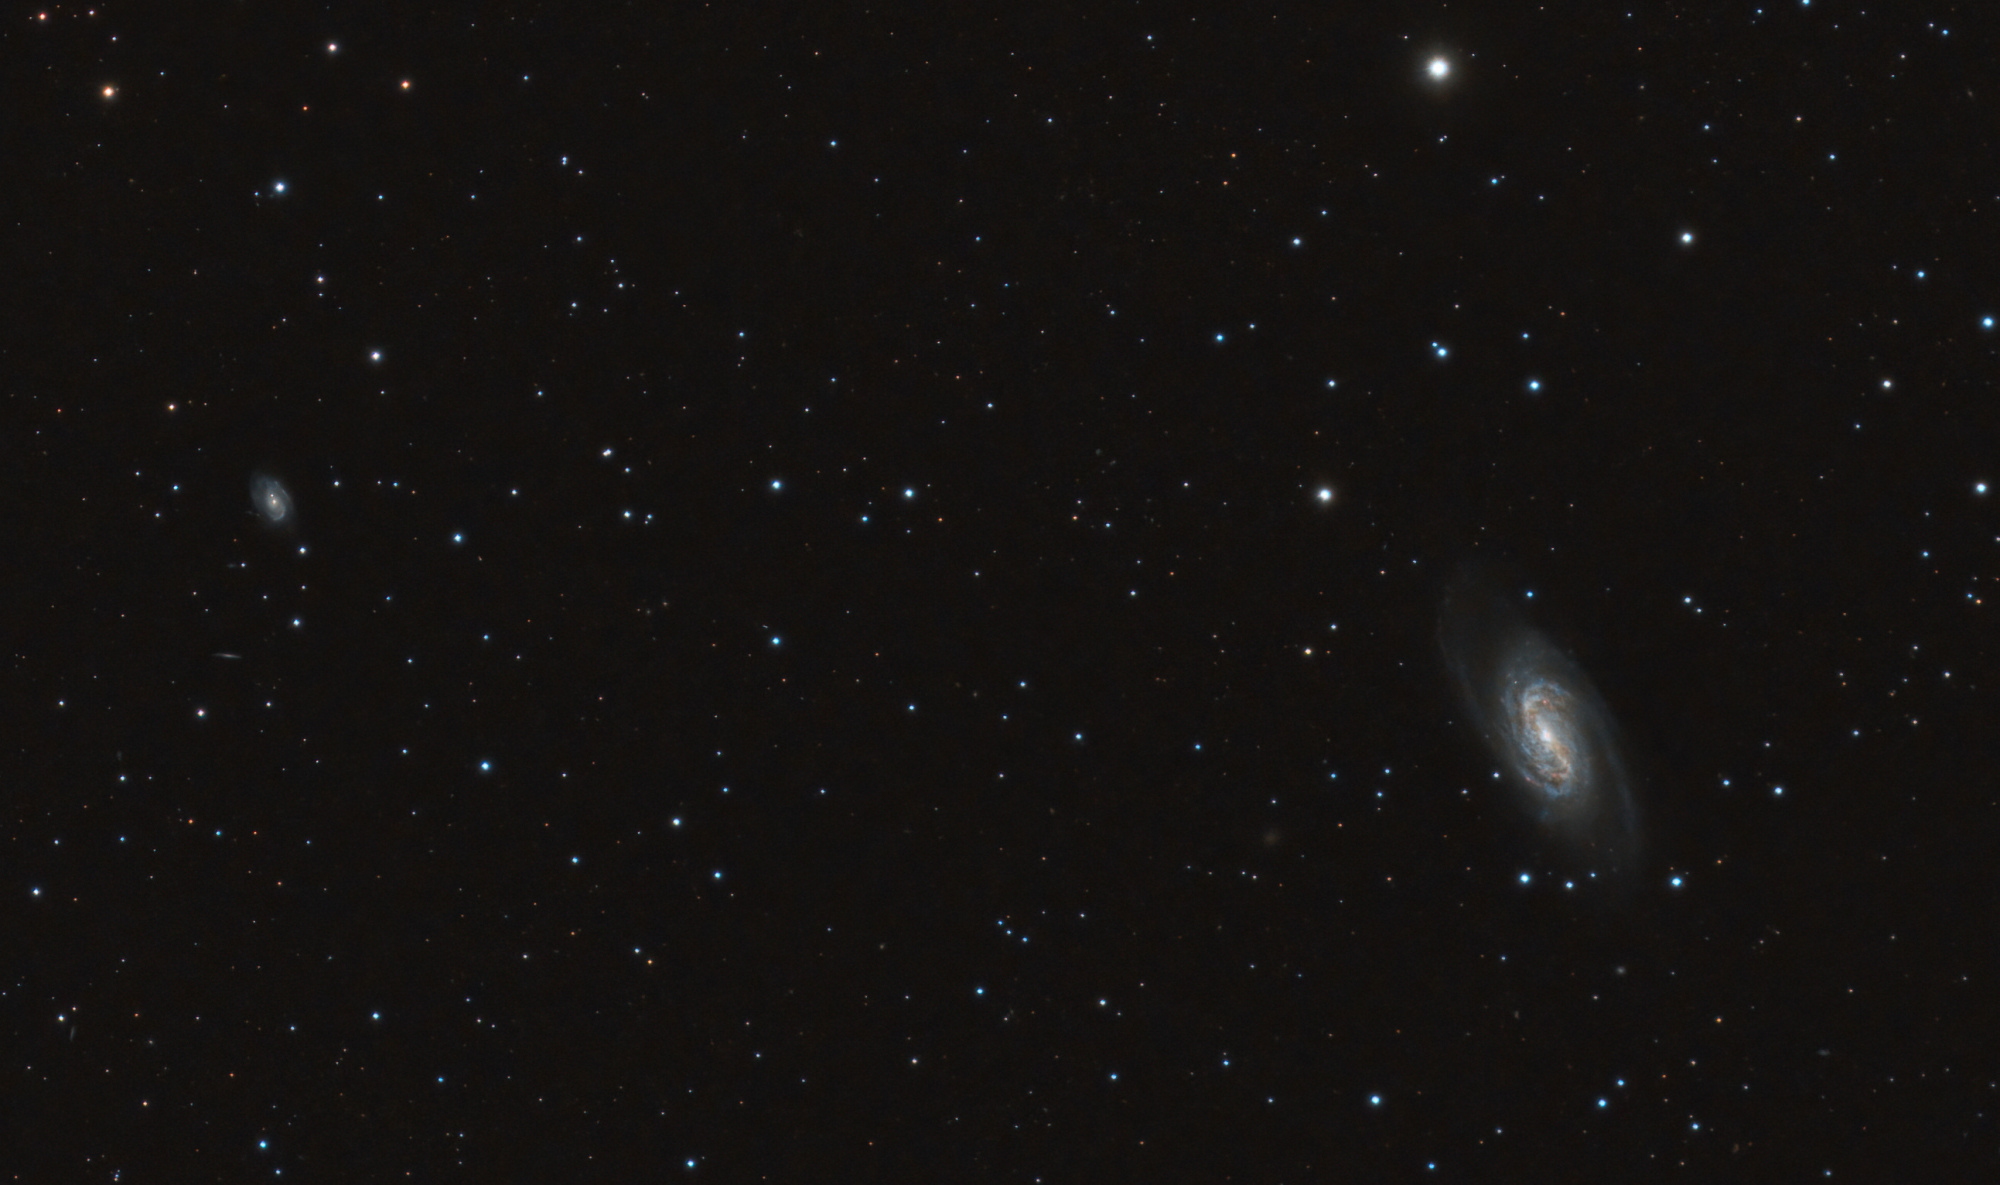 607585bb5af62_NGC2903-39x180sec-Berche-recadre.thumb.jpg.9ede2a7b2f0749e46dc59df1ce9bc92d.jpg